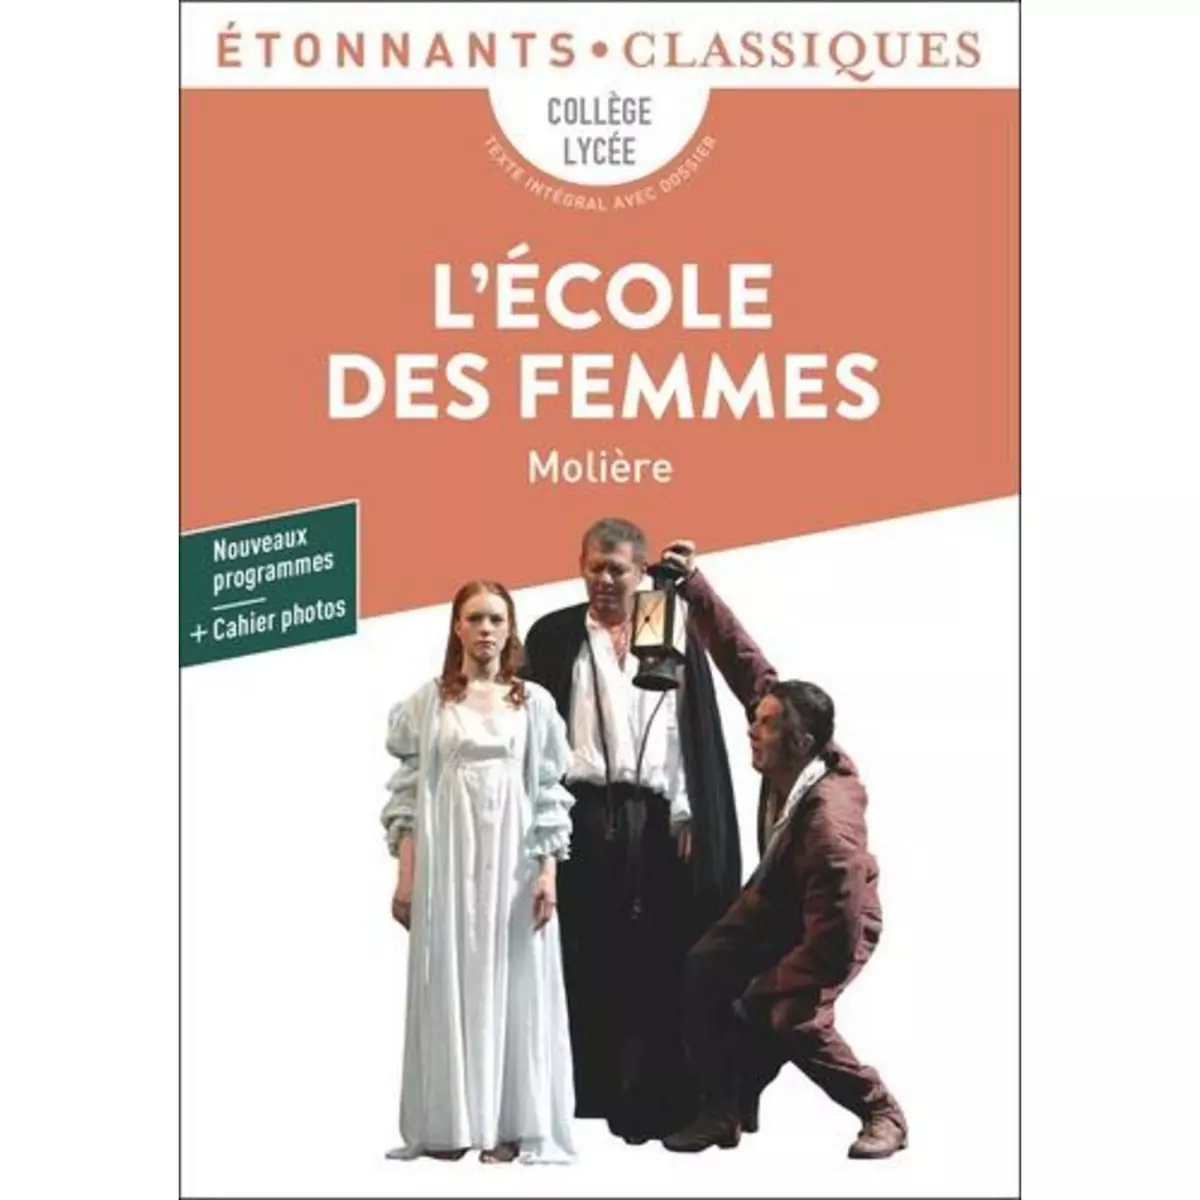  L'ECOLE DES FEMMES, Molière